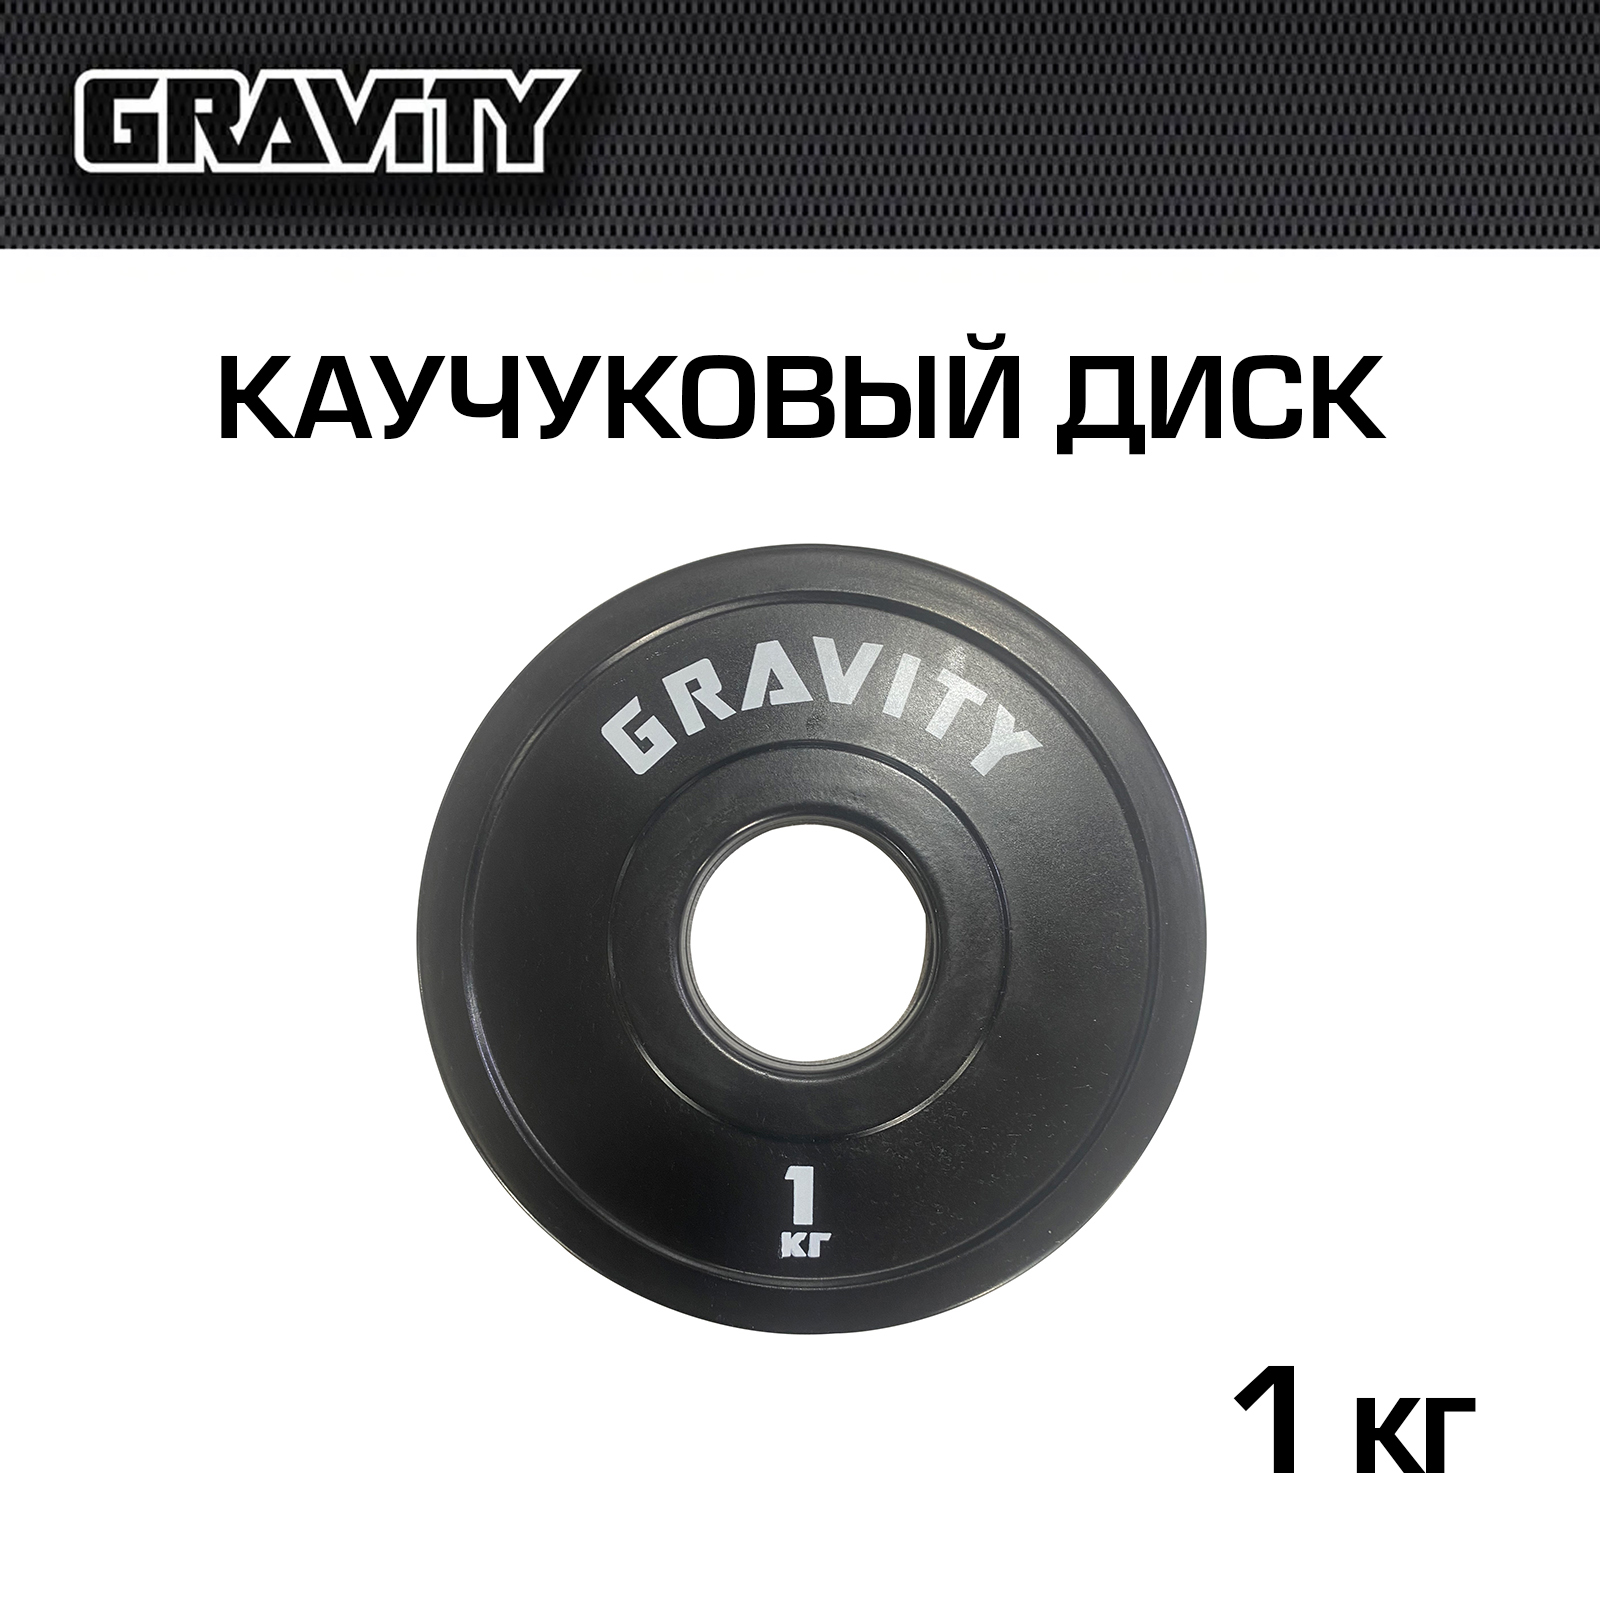 Каучуковый диск Gravity, черный, белый лого, 1 кг